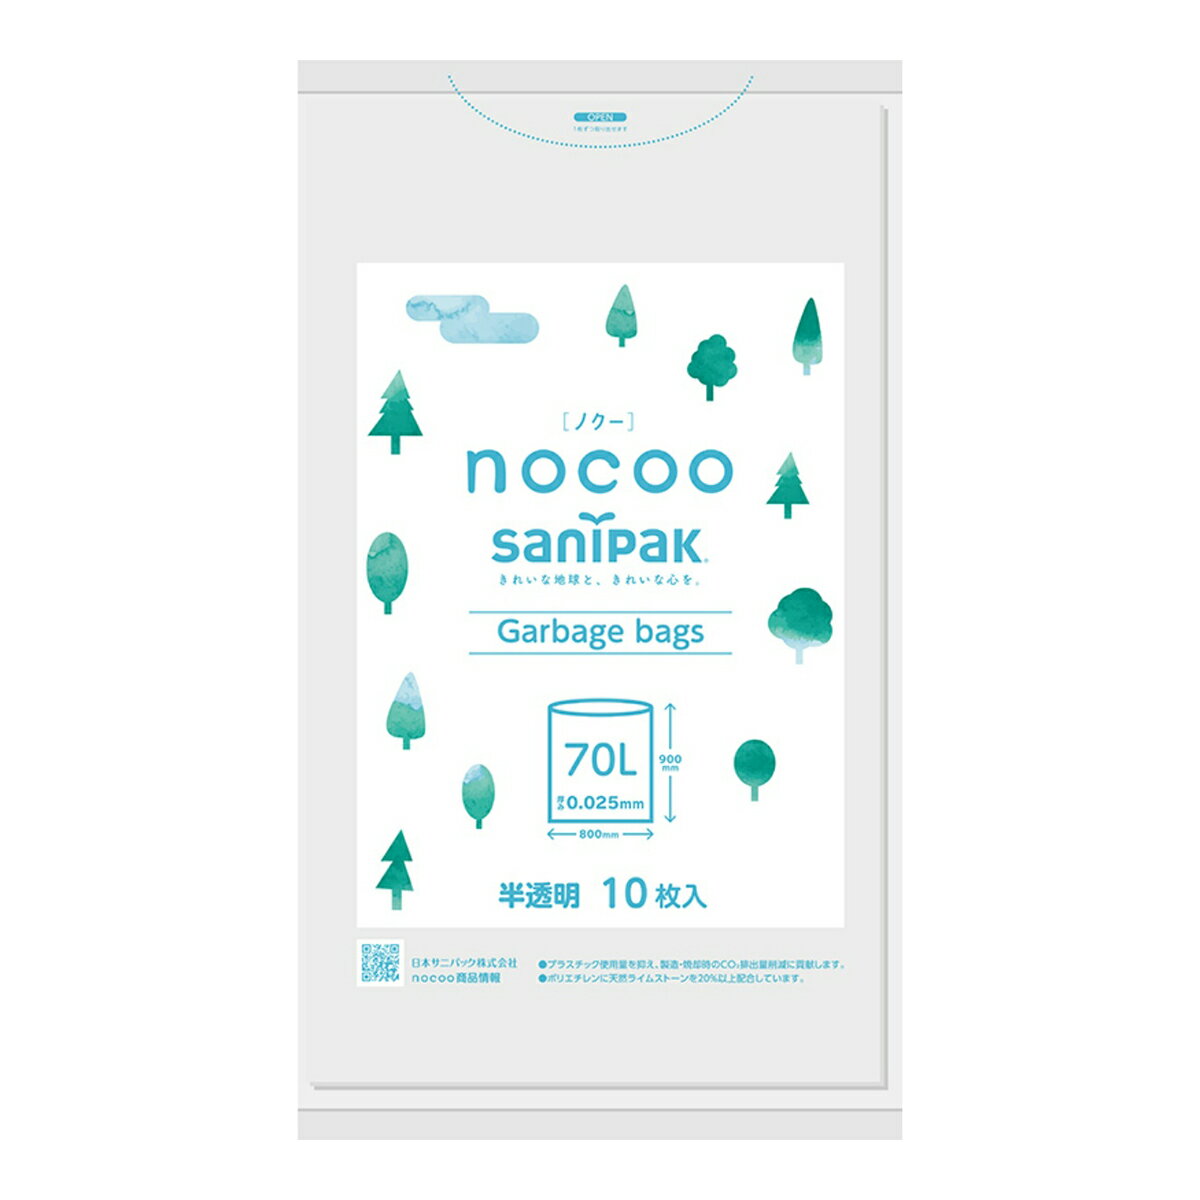 商品名：日本サニパック CN71 nocoo ノクー 半透明 70L 10枚入内容量：10枚JANコード：4902393580045発売元、製造元、輸入元又は販売元：日本サニパック株式会社原産国：インドネシア商品番号：101-81412商品説明ブランド名はnocoo（ノクー）。No　CO2でノクーです。プラスチックの使用量を抑え、使えば使うほど二酸化炭素排出量削減に貢献する商品です。広告文責：アットライフ株式会社TEL 050-3196-1510 ※商品パッケージは変更の場合あり。メーカー欠品または完売の際、キャンセルをお願いすることがあります。ご了承ください。